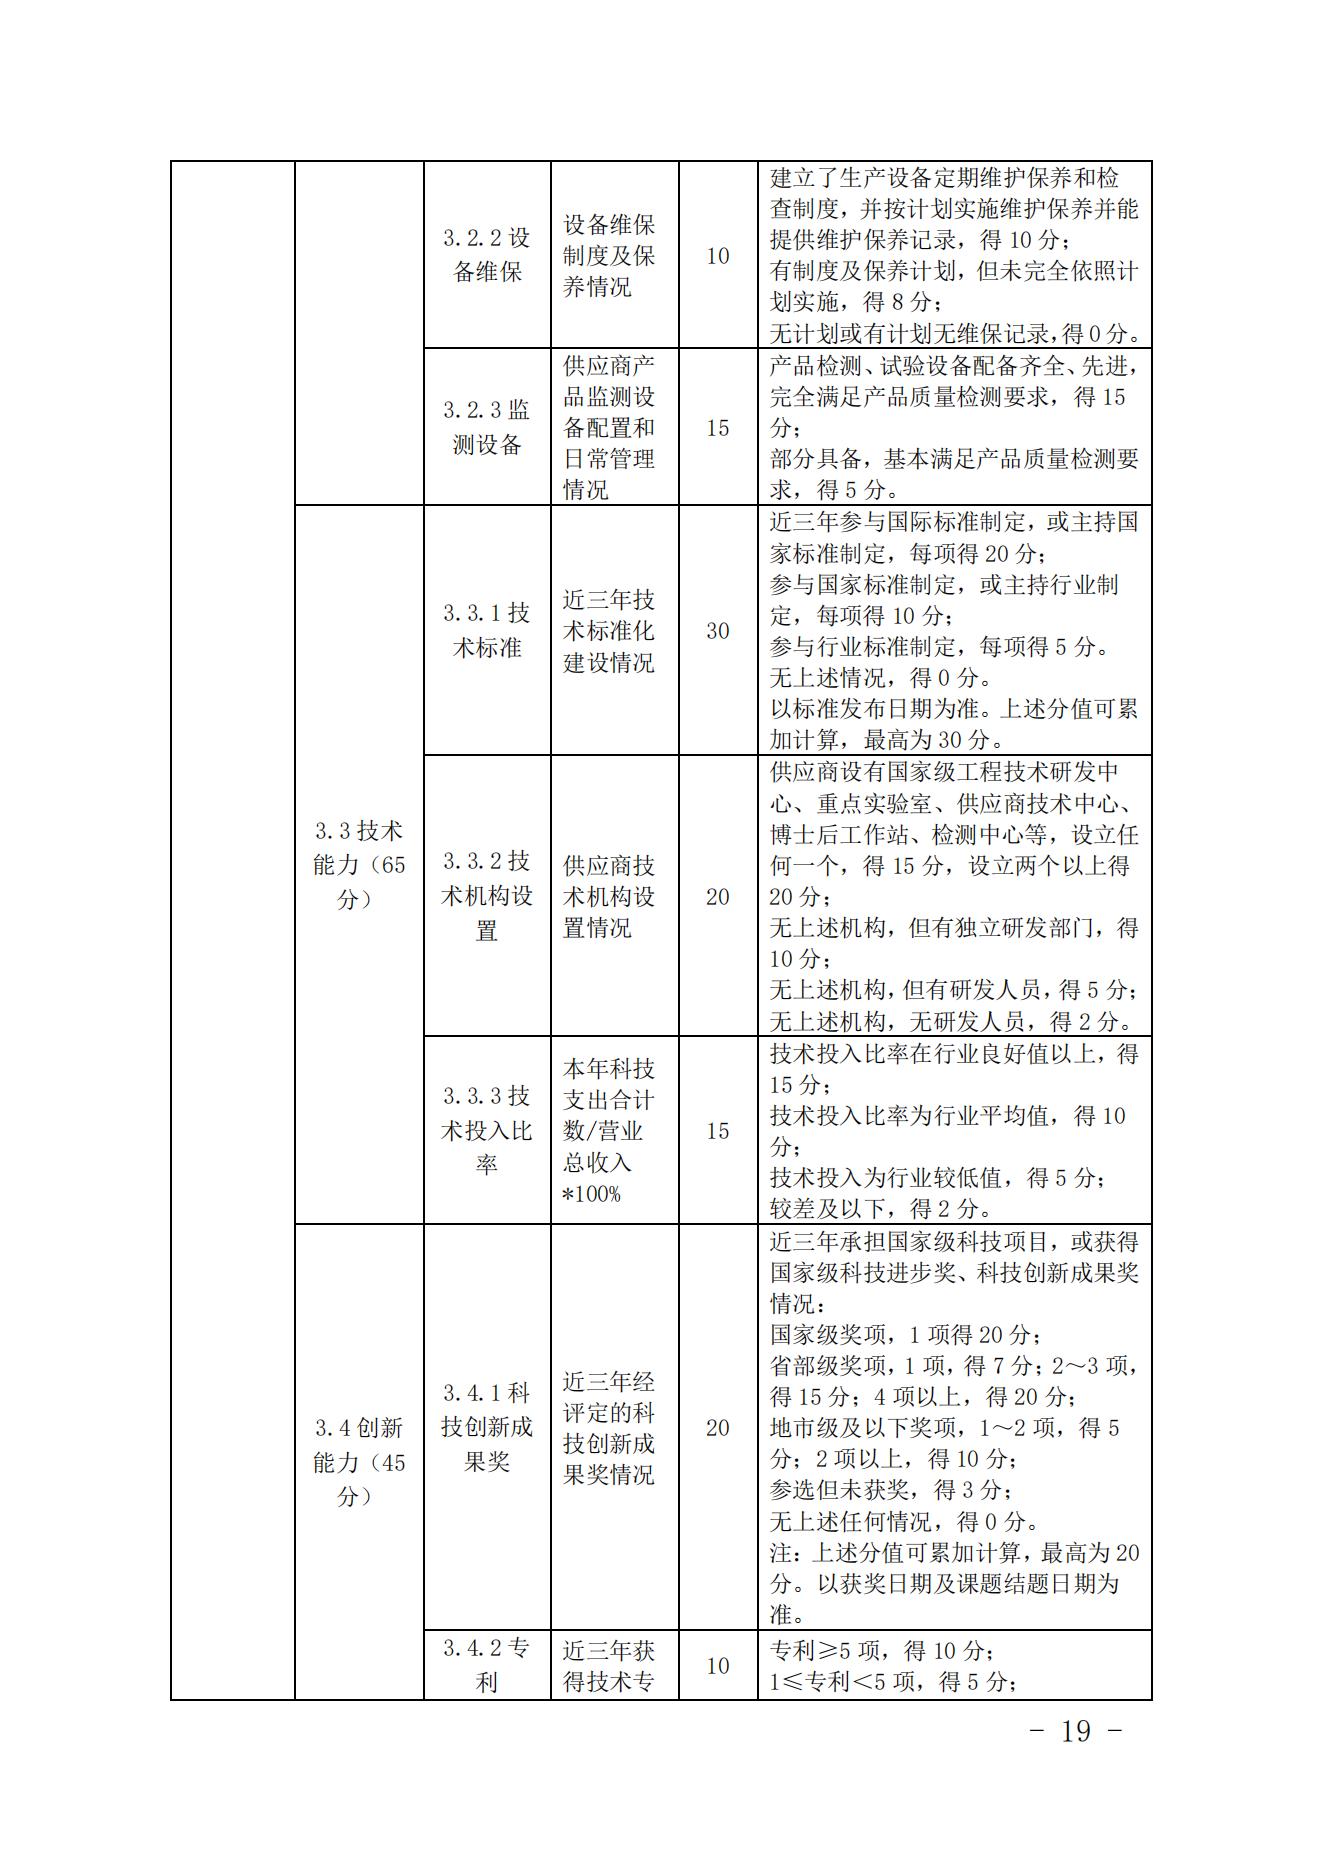 关于印发《中国核能行业协会核能行业供应商信用评价管理办法》《中国核能行业协会核能行业供应商信用评价规范》的通知_18.jpg